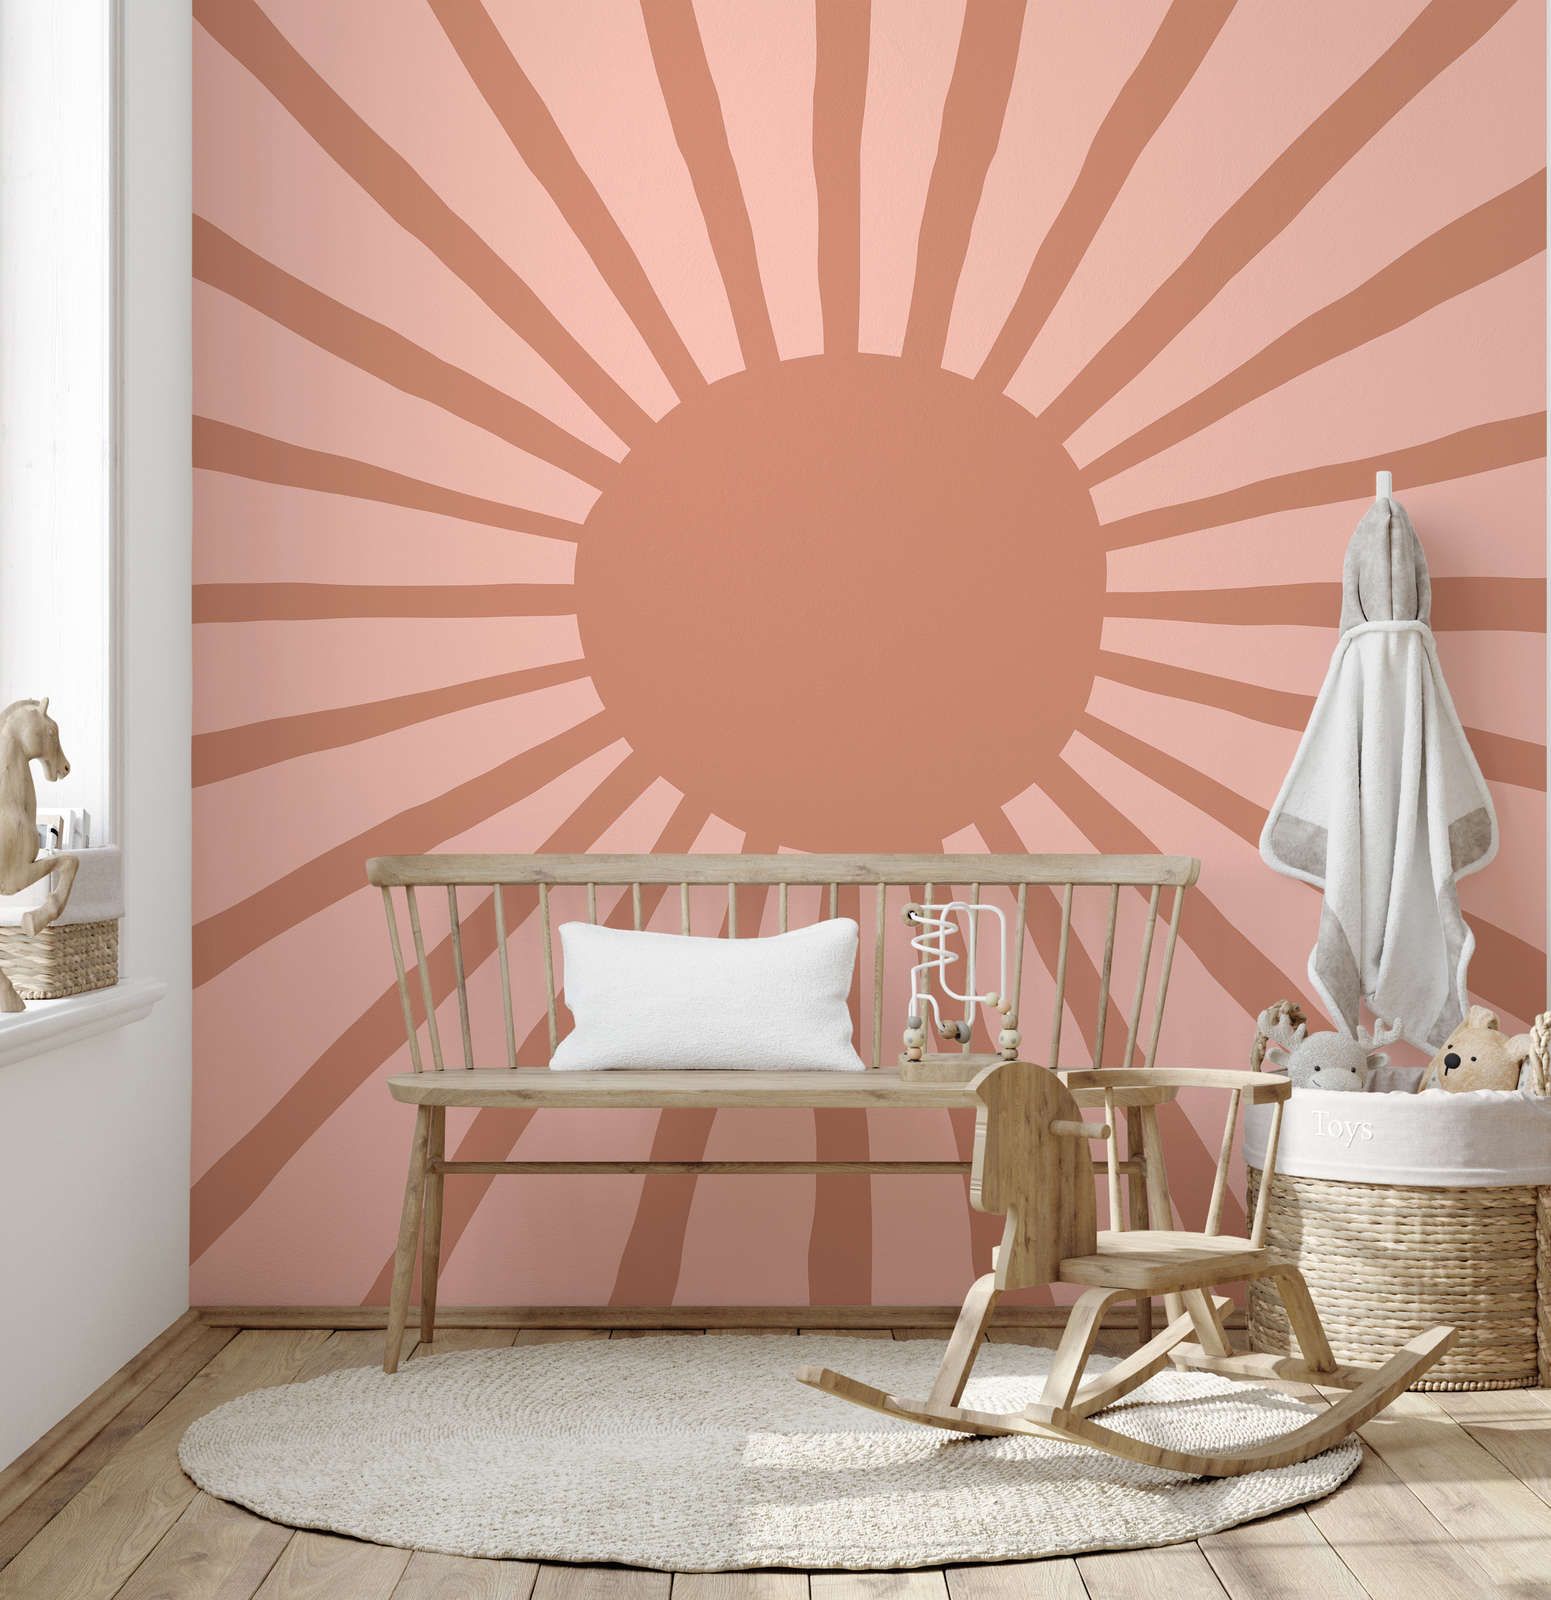             Fototapete abstrakte Sonne im gemalten Stil – Glattes & perlmutt-schimmerndes Vlies
        